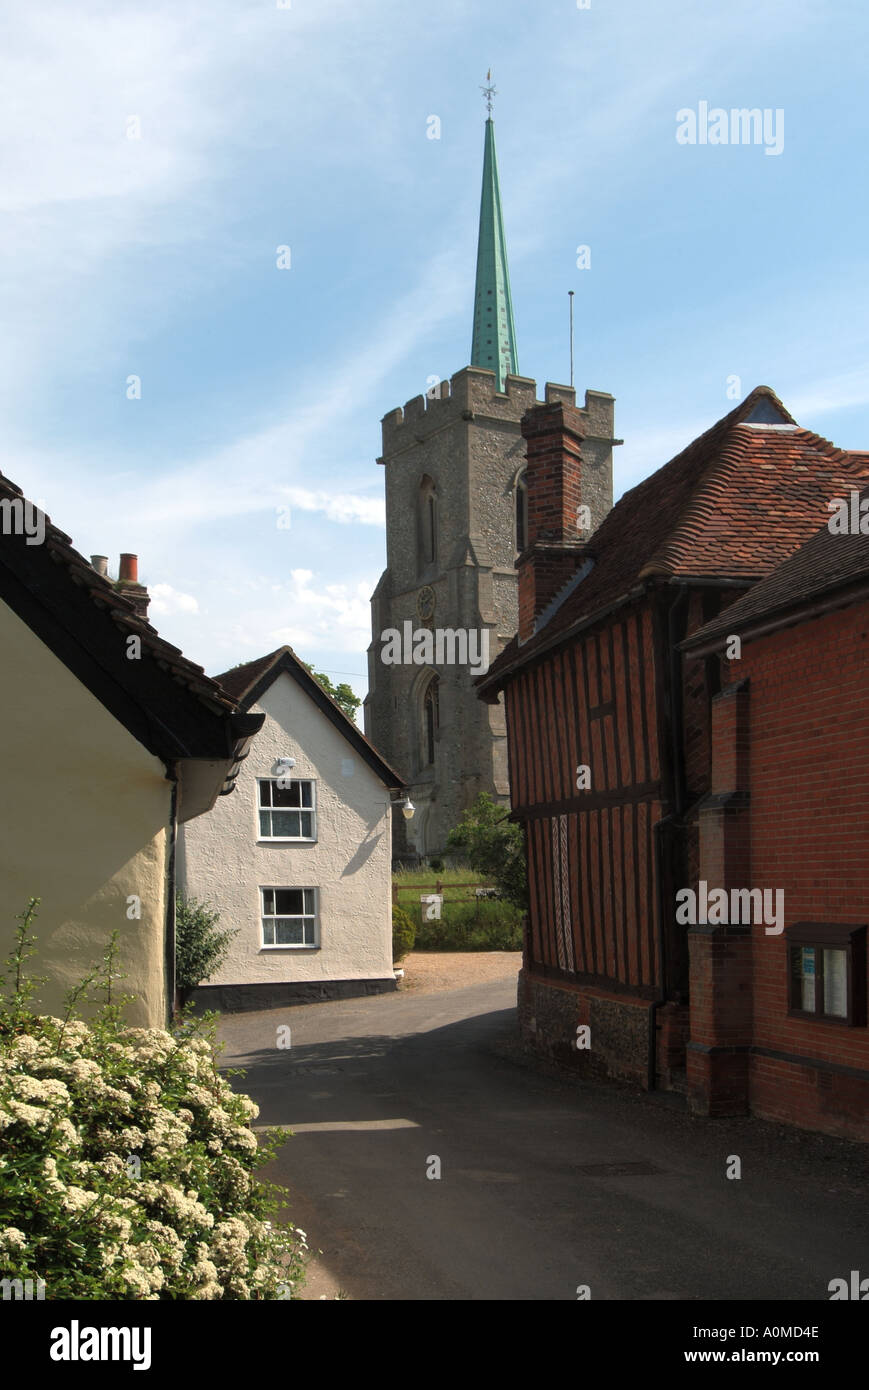 Brauauge village cottage dans une voie étroite avec église paroissiale & Vert cuivre patine flèche et tour Hertfordshire Angleterre Royaume-Uni Banque D'Images